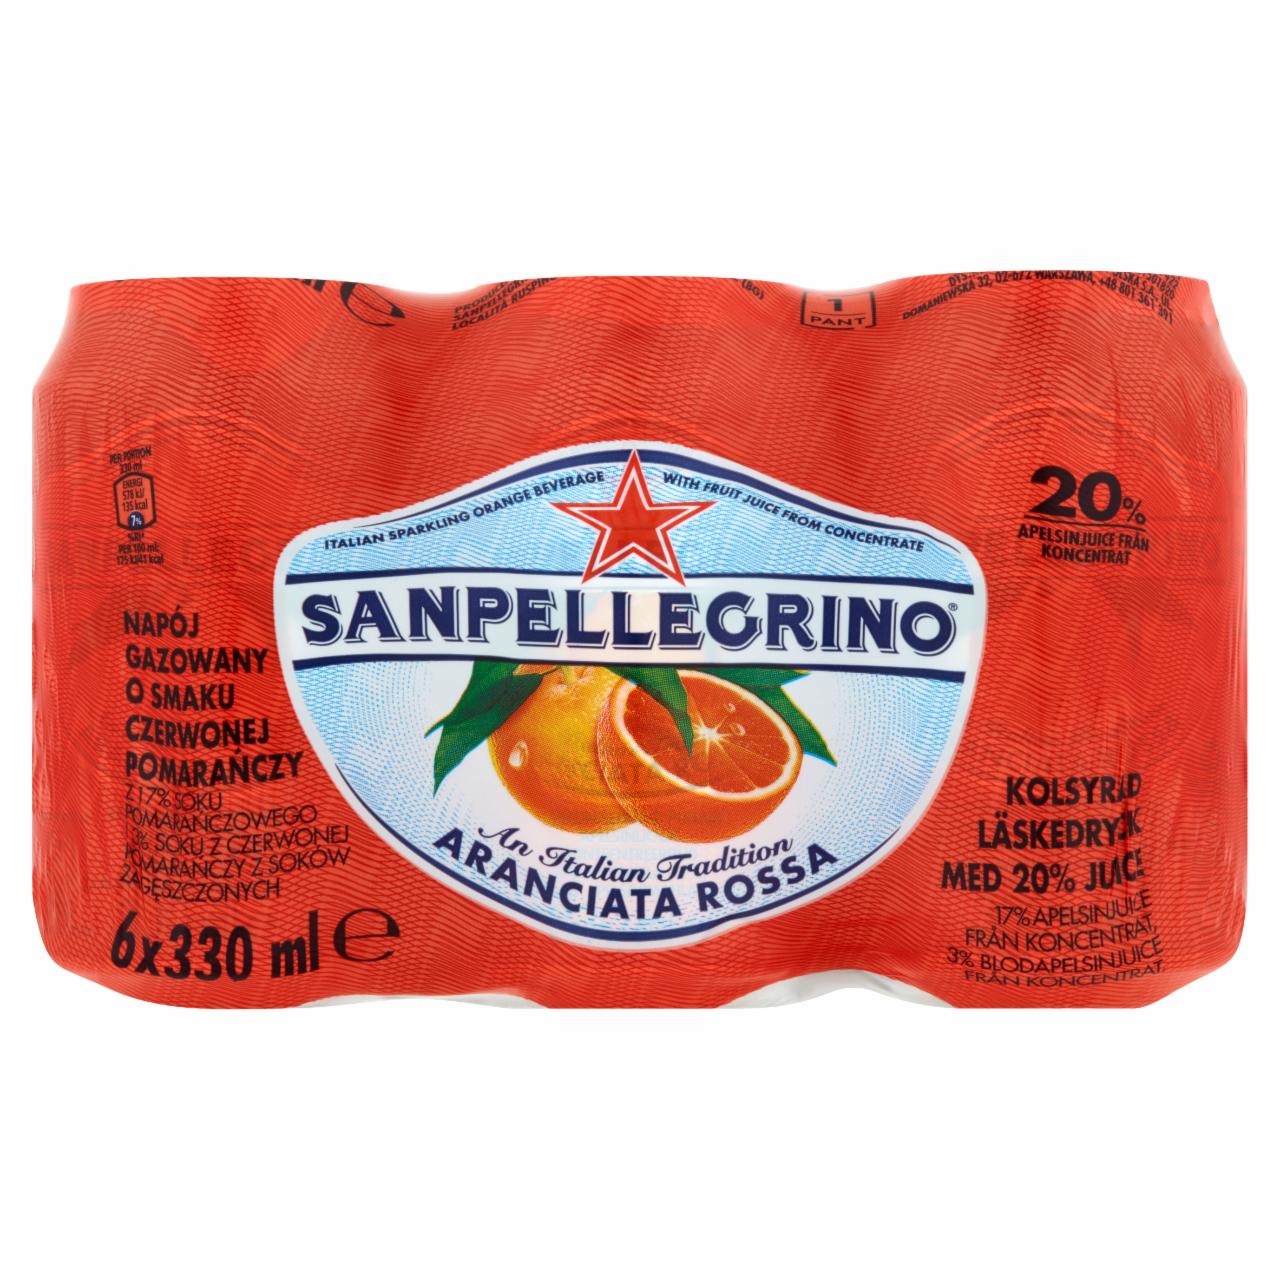 Zdjęcia - Sanpellegrino Aranciata Rossa Napój gazowany o smaku czerwonej pomarańczy 6 x 330 ml